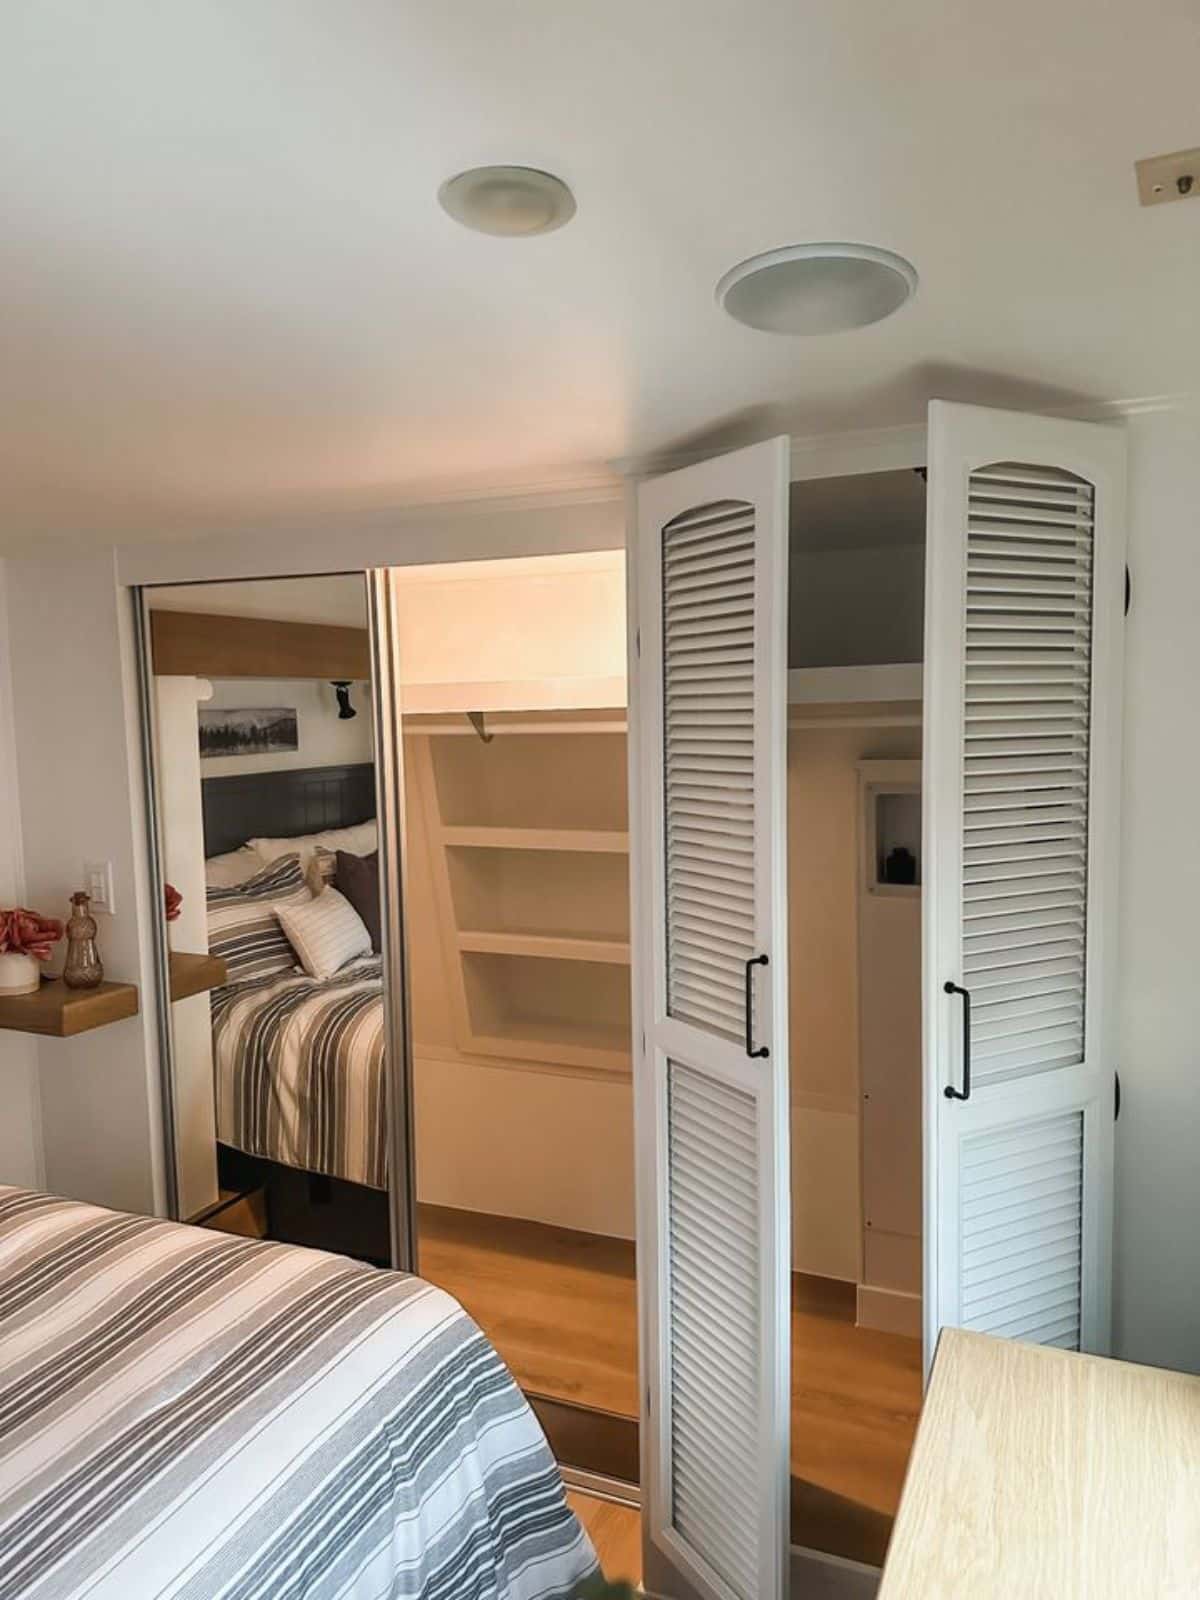 huge double door closet with hook up for washer dryer combo in bedroom